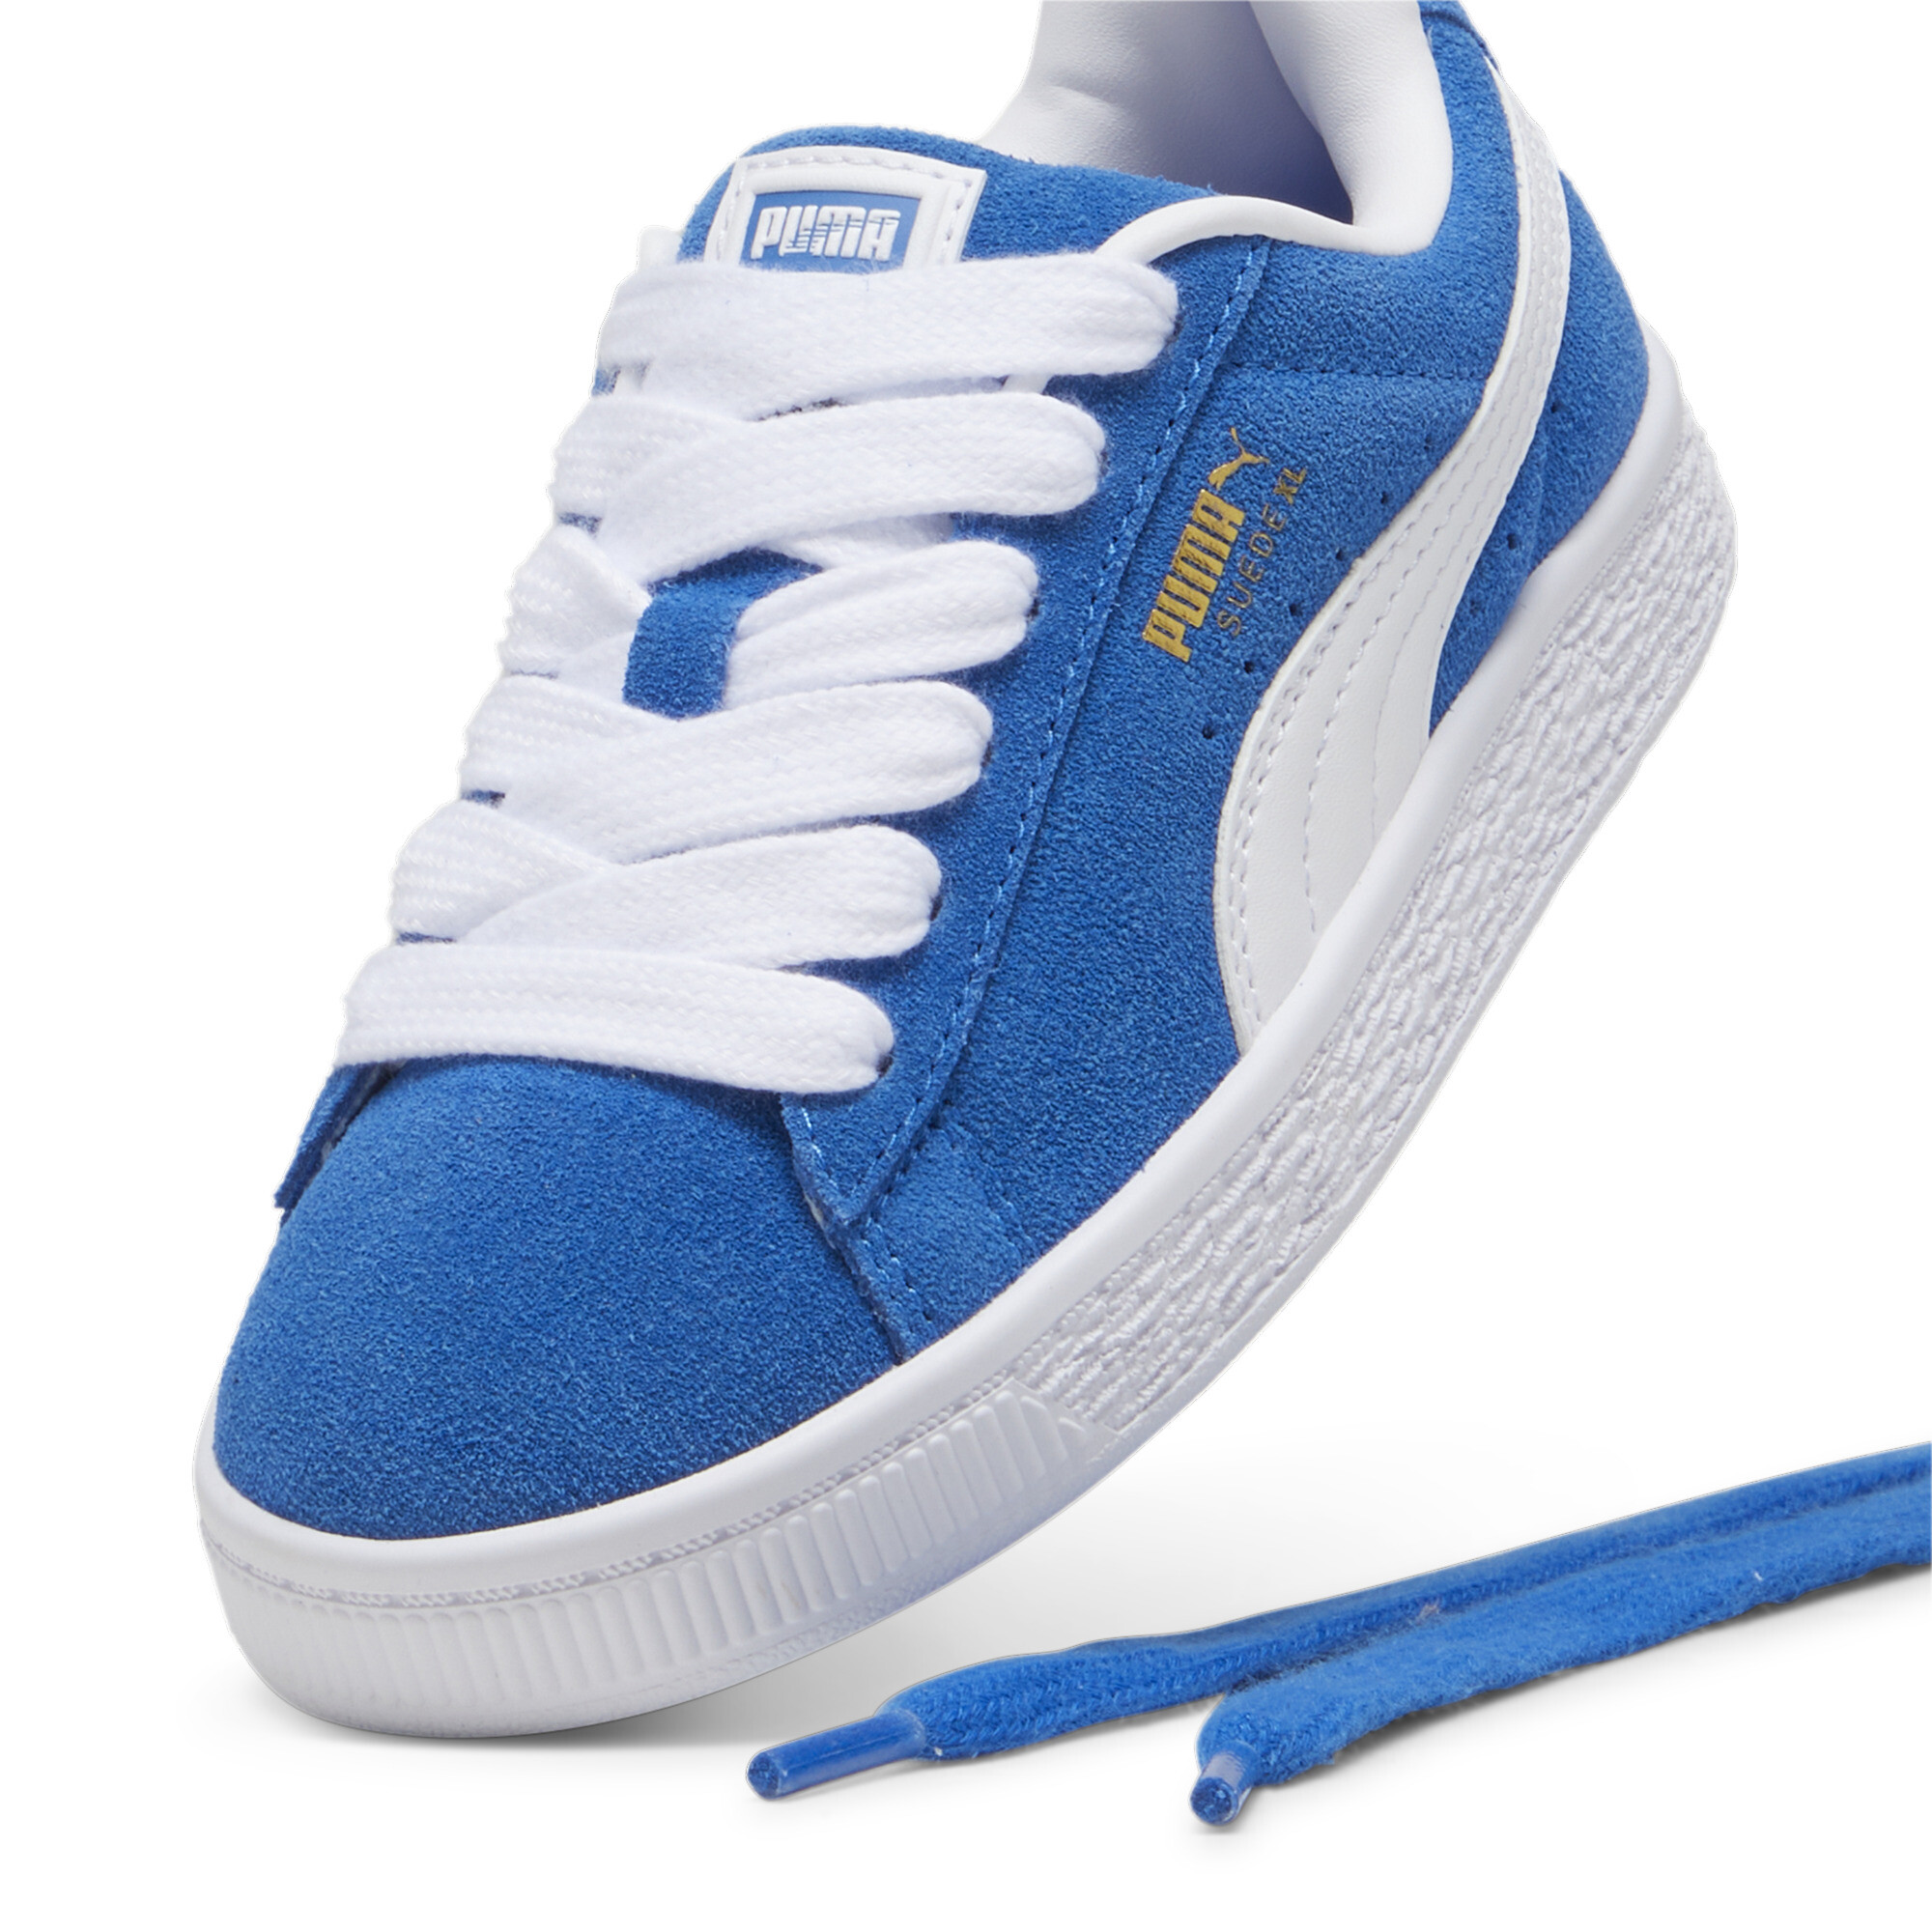 Kids' PUMA Suede XL Sneakers In 80 - Blue, Size EU 33